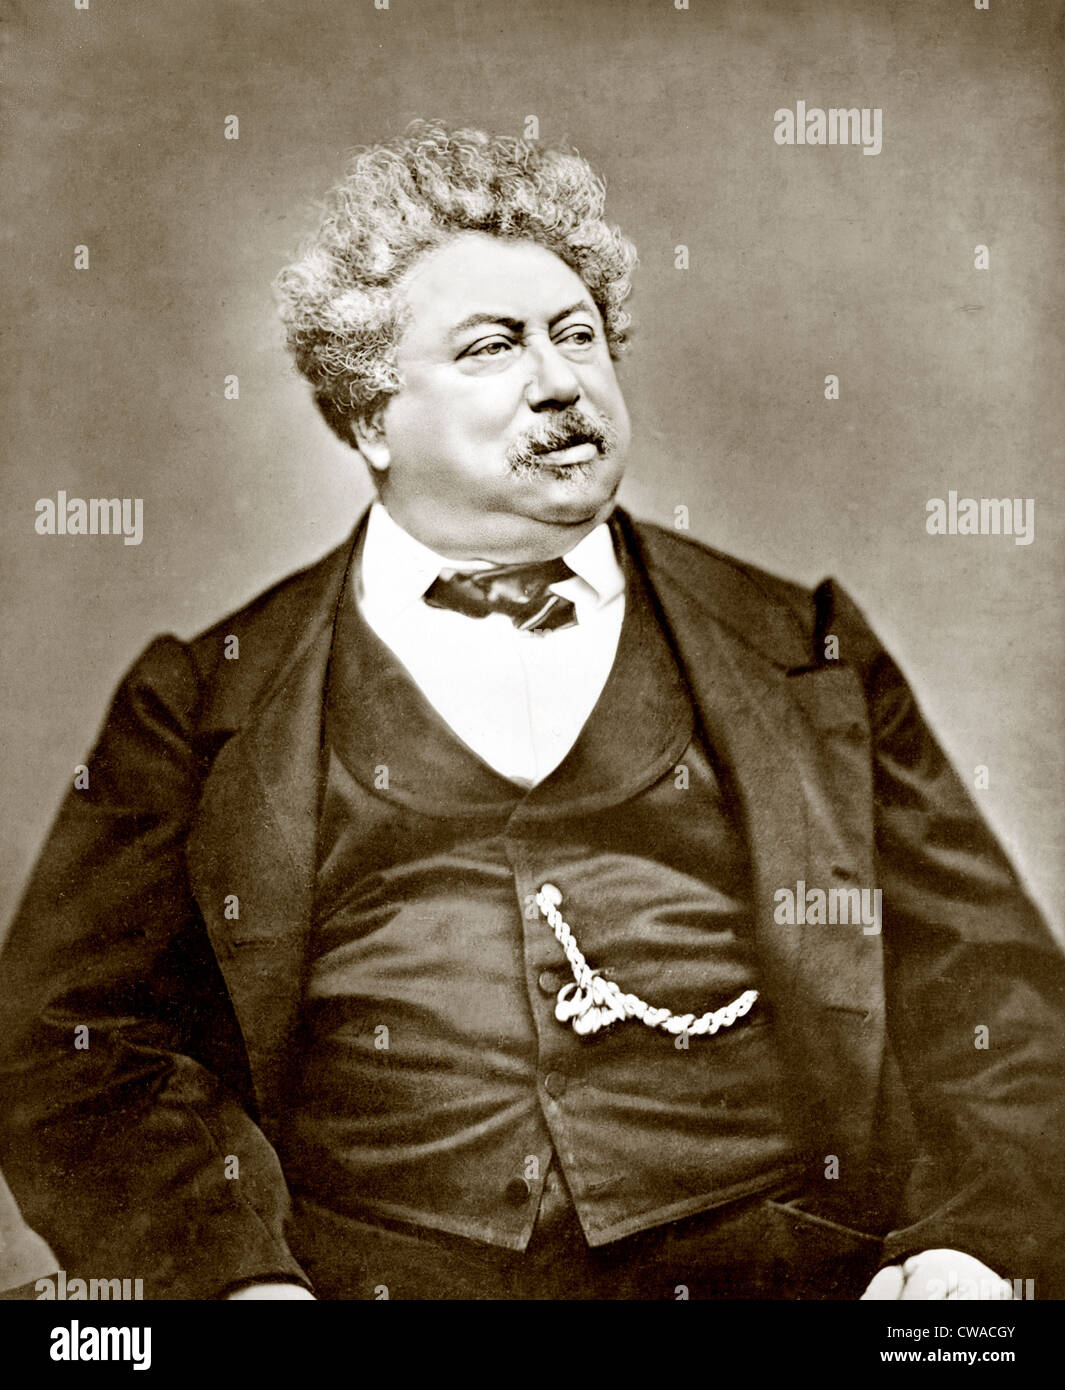 Alexandre Dumas Père (1802-1870) beliebten französischen Dramatiker und historische Schriftsteller, am bekanntesten als der Autor von "der Graf von Stockfoto